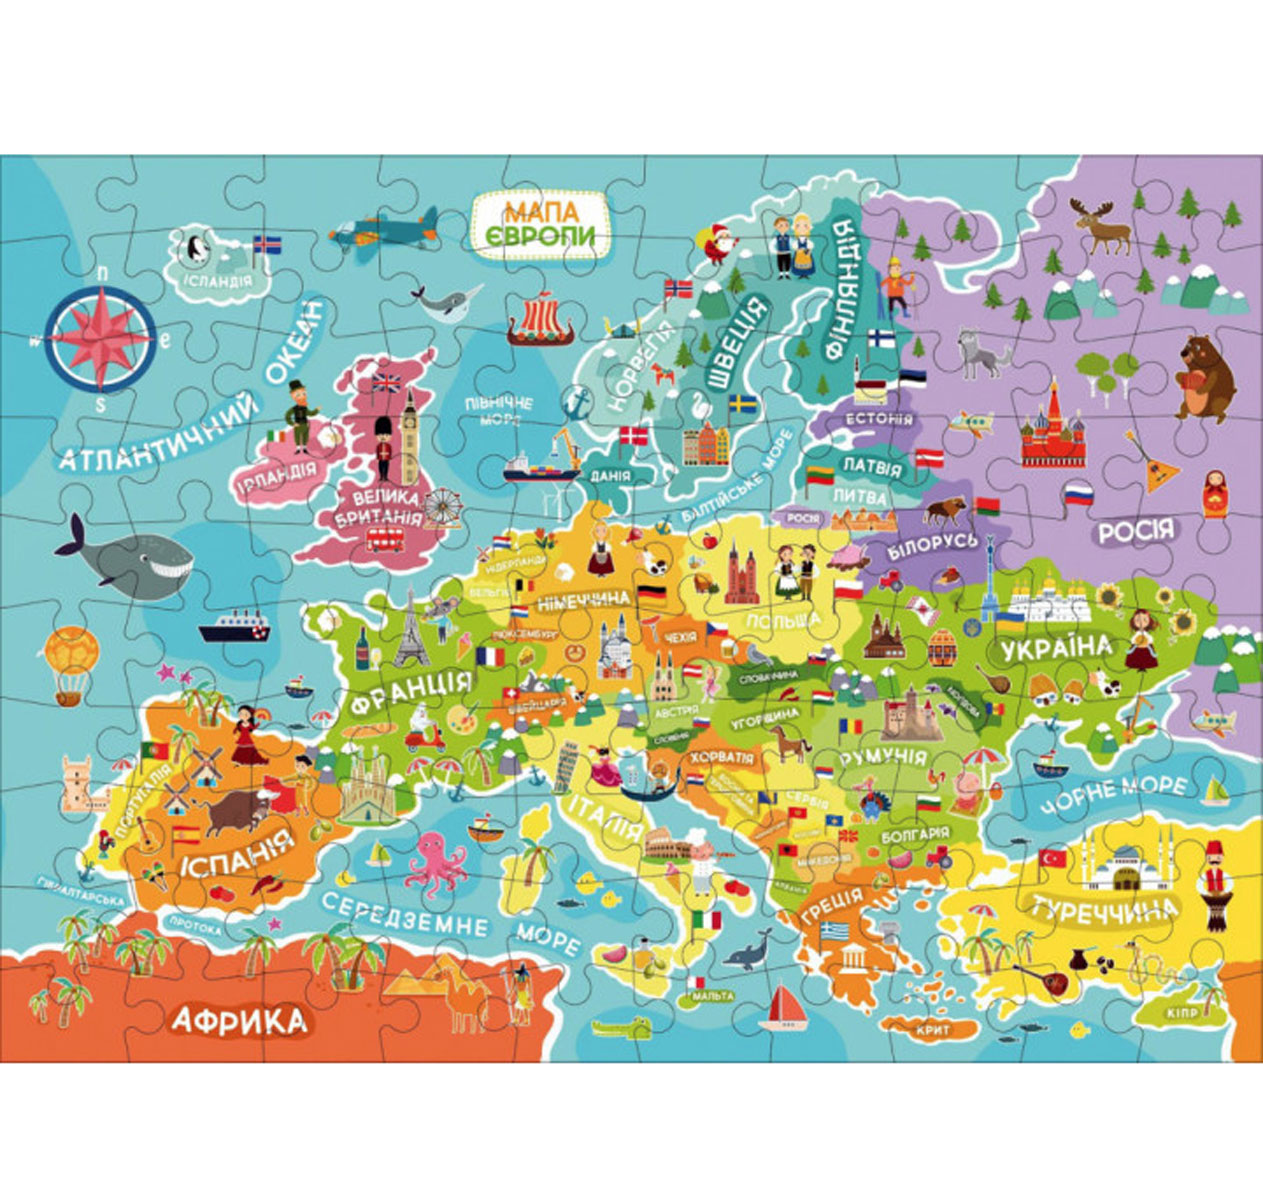 Пазл 'Карта Европы' на украинском языке